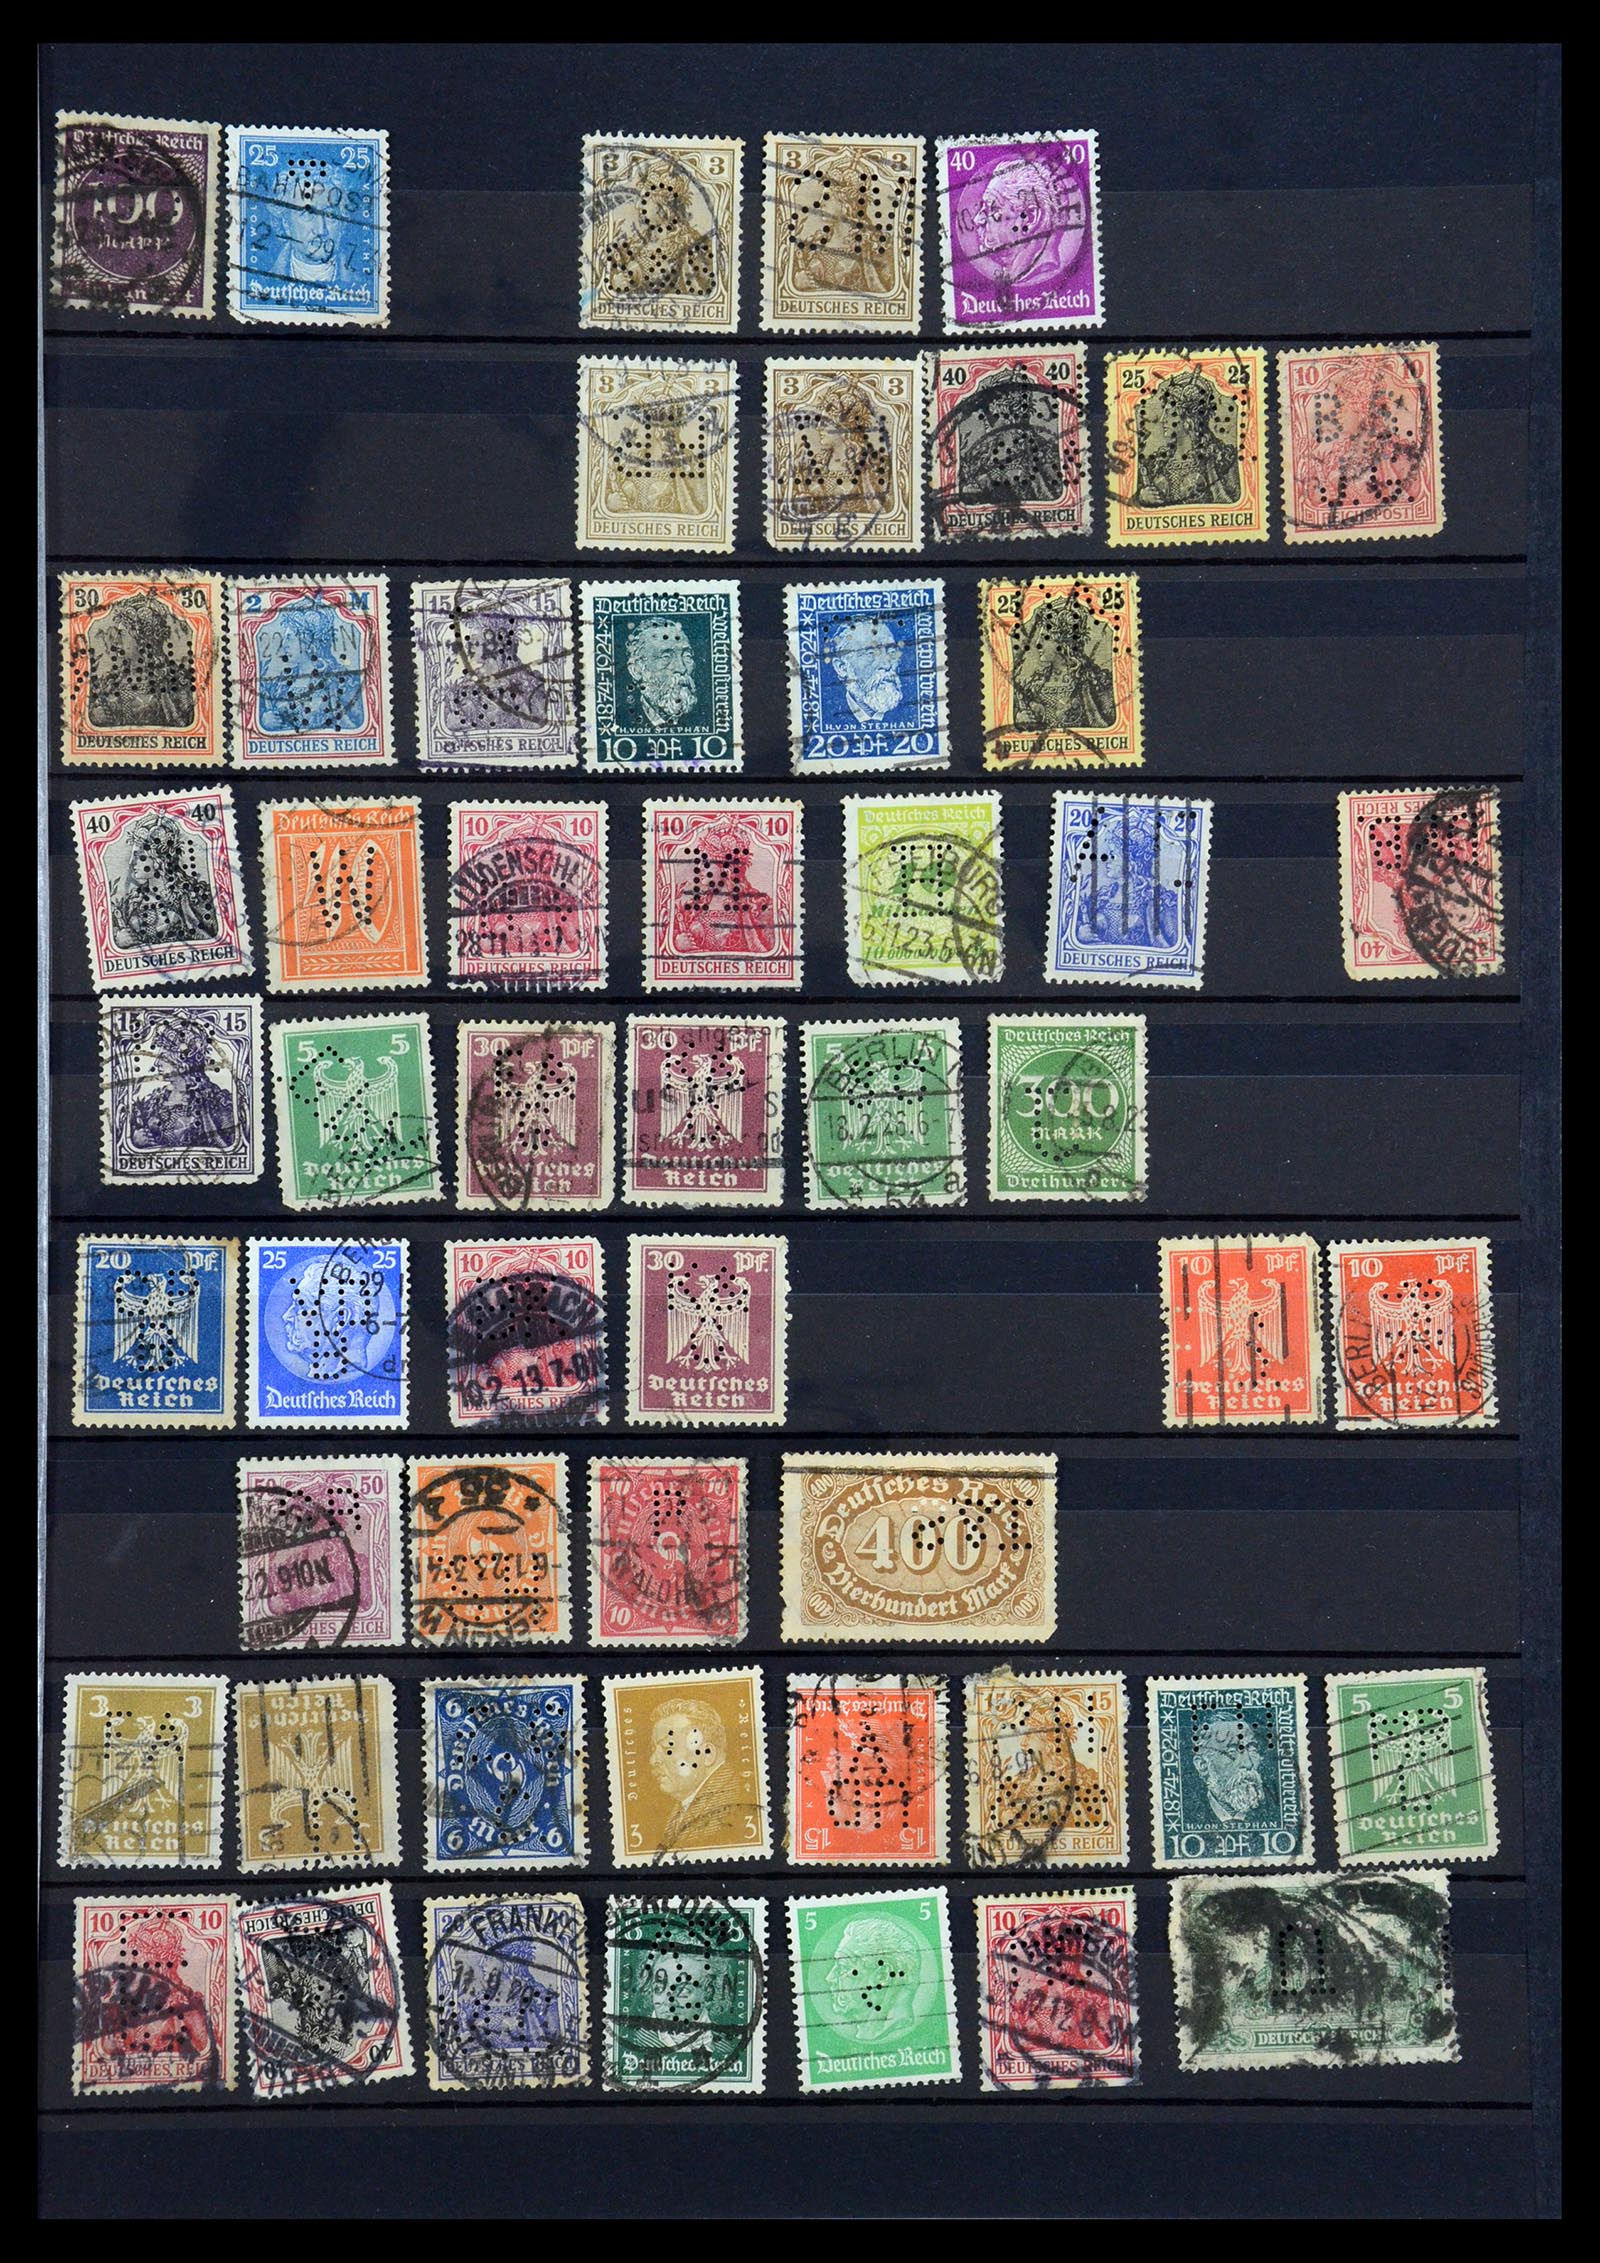 35183 019 - Stamp Collection 35183 German Reich perfins 1880-1945.